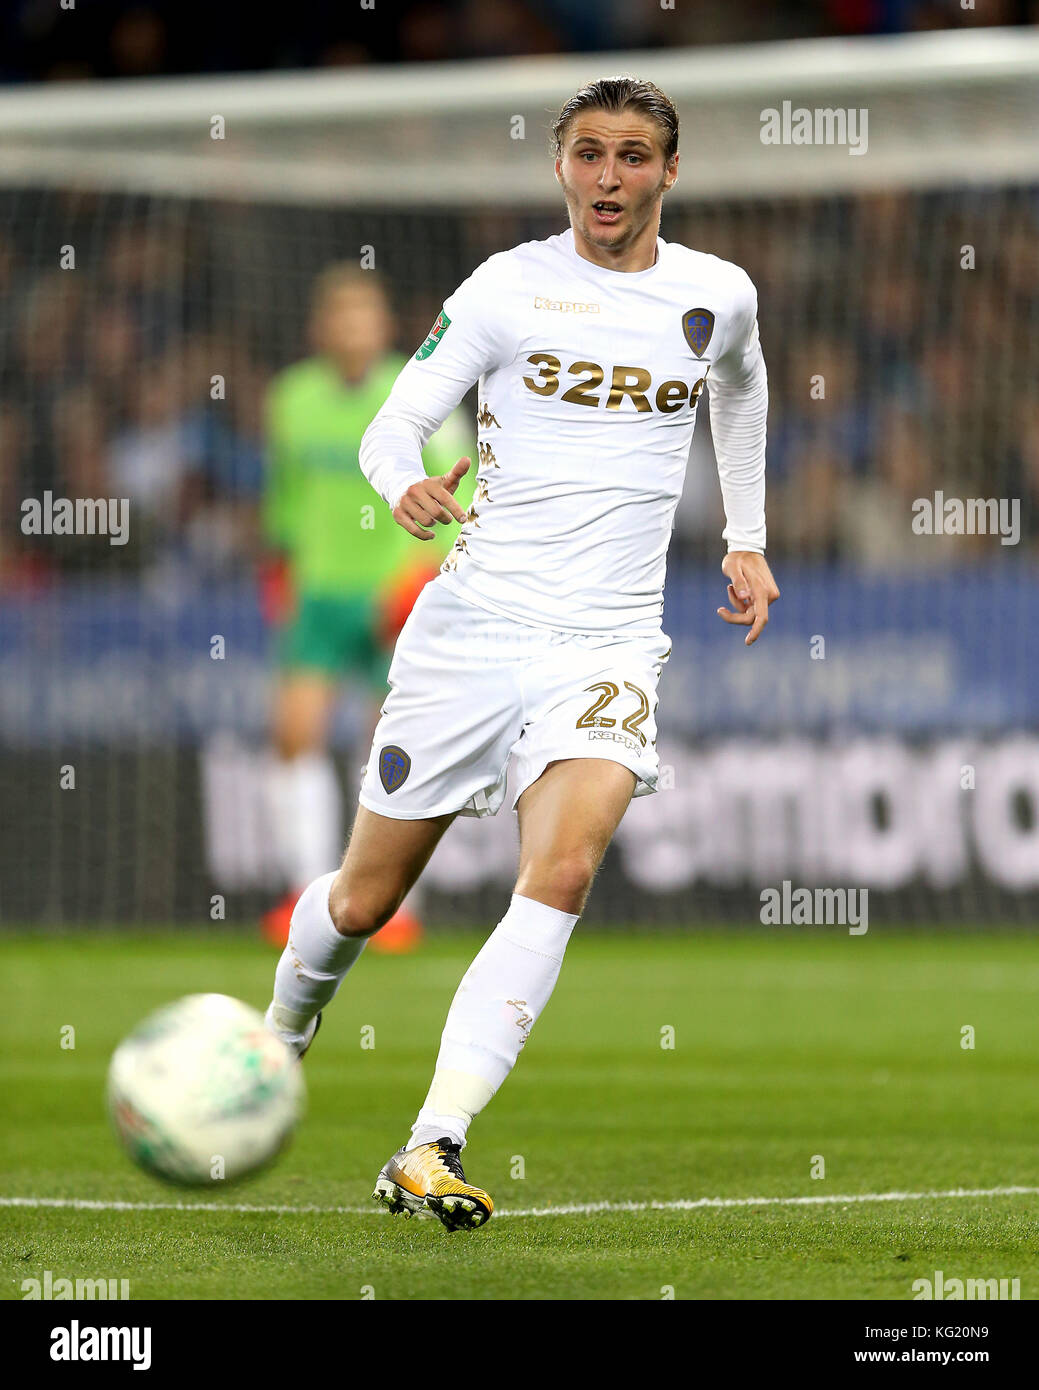 Pawel Cibicki Leeds United Stockfotografie Alamy